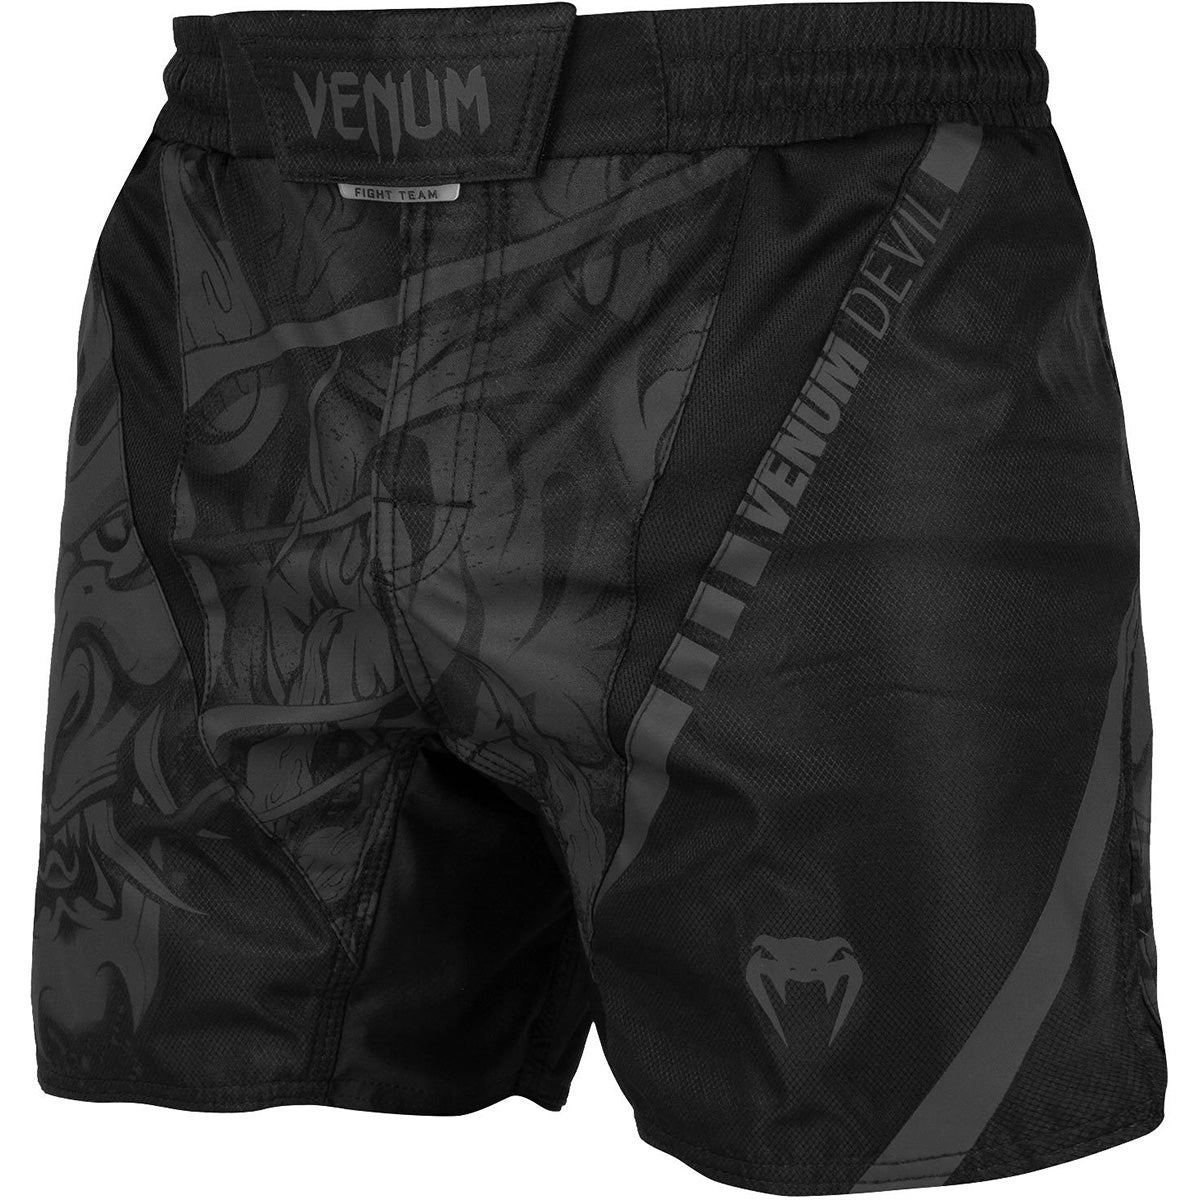 Venum Devil MMA Fight Shorts - Black/Black Venum